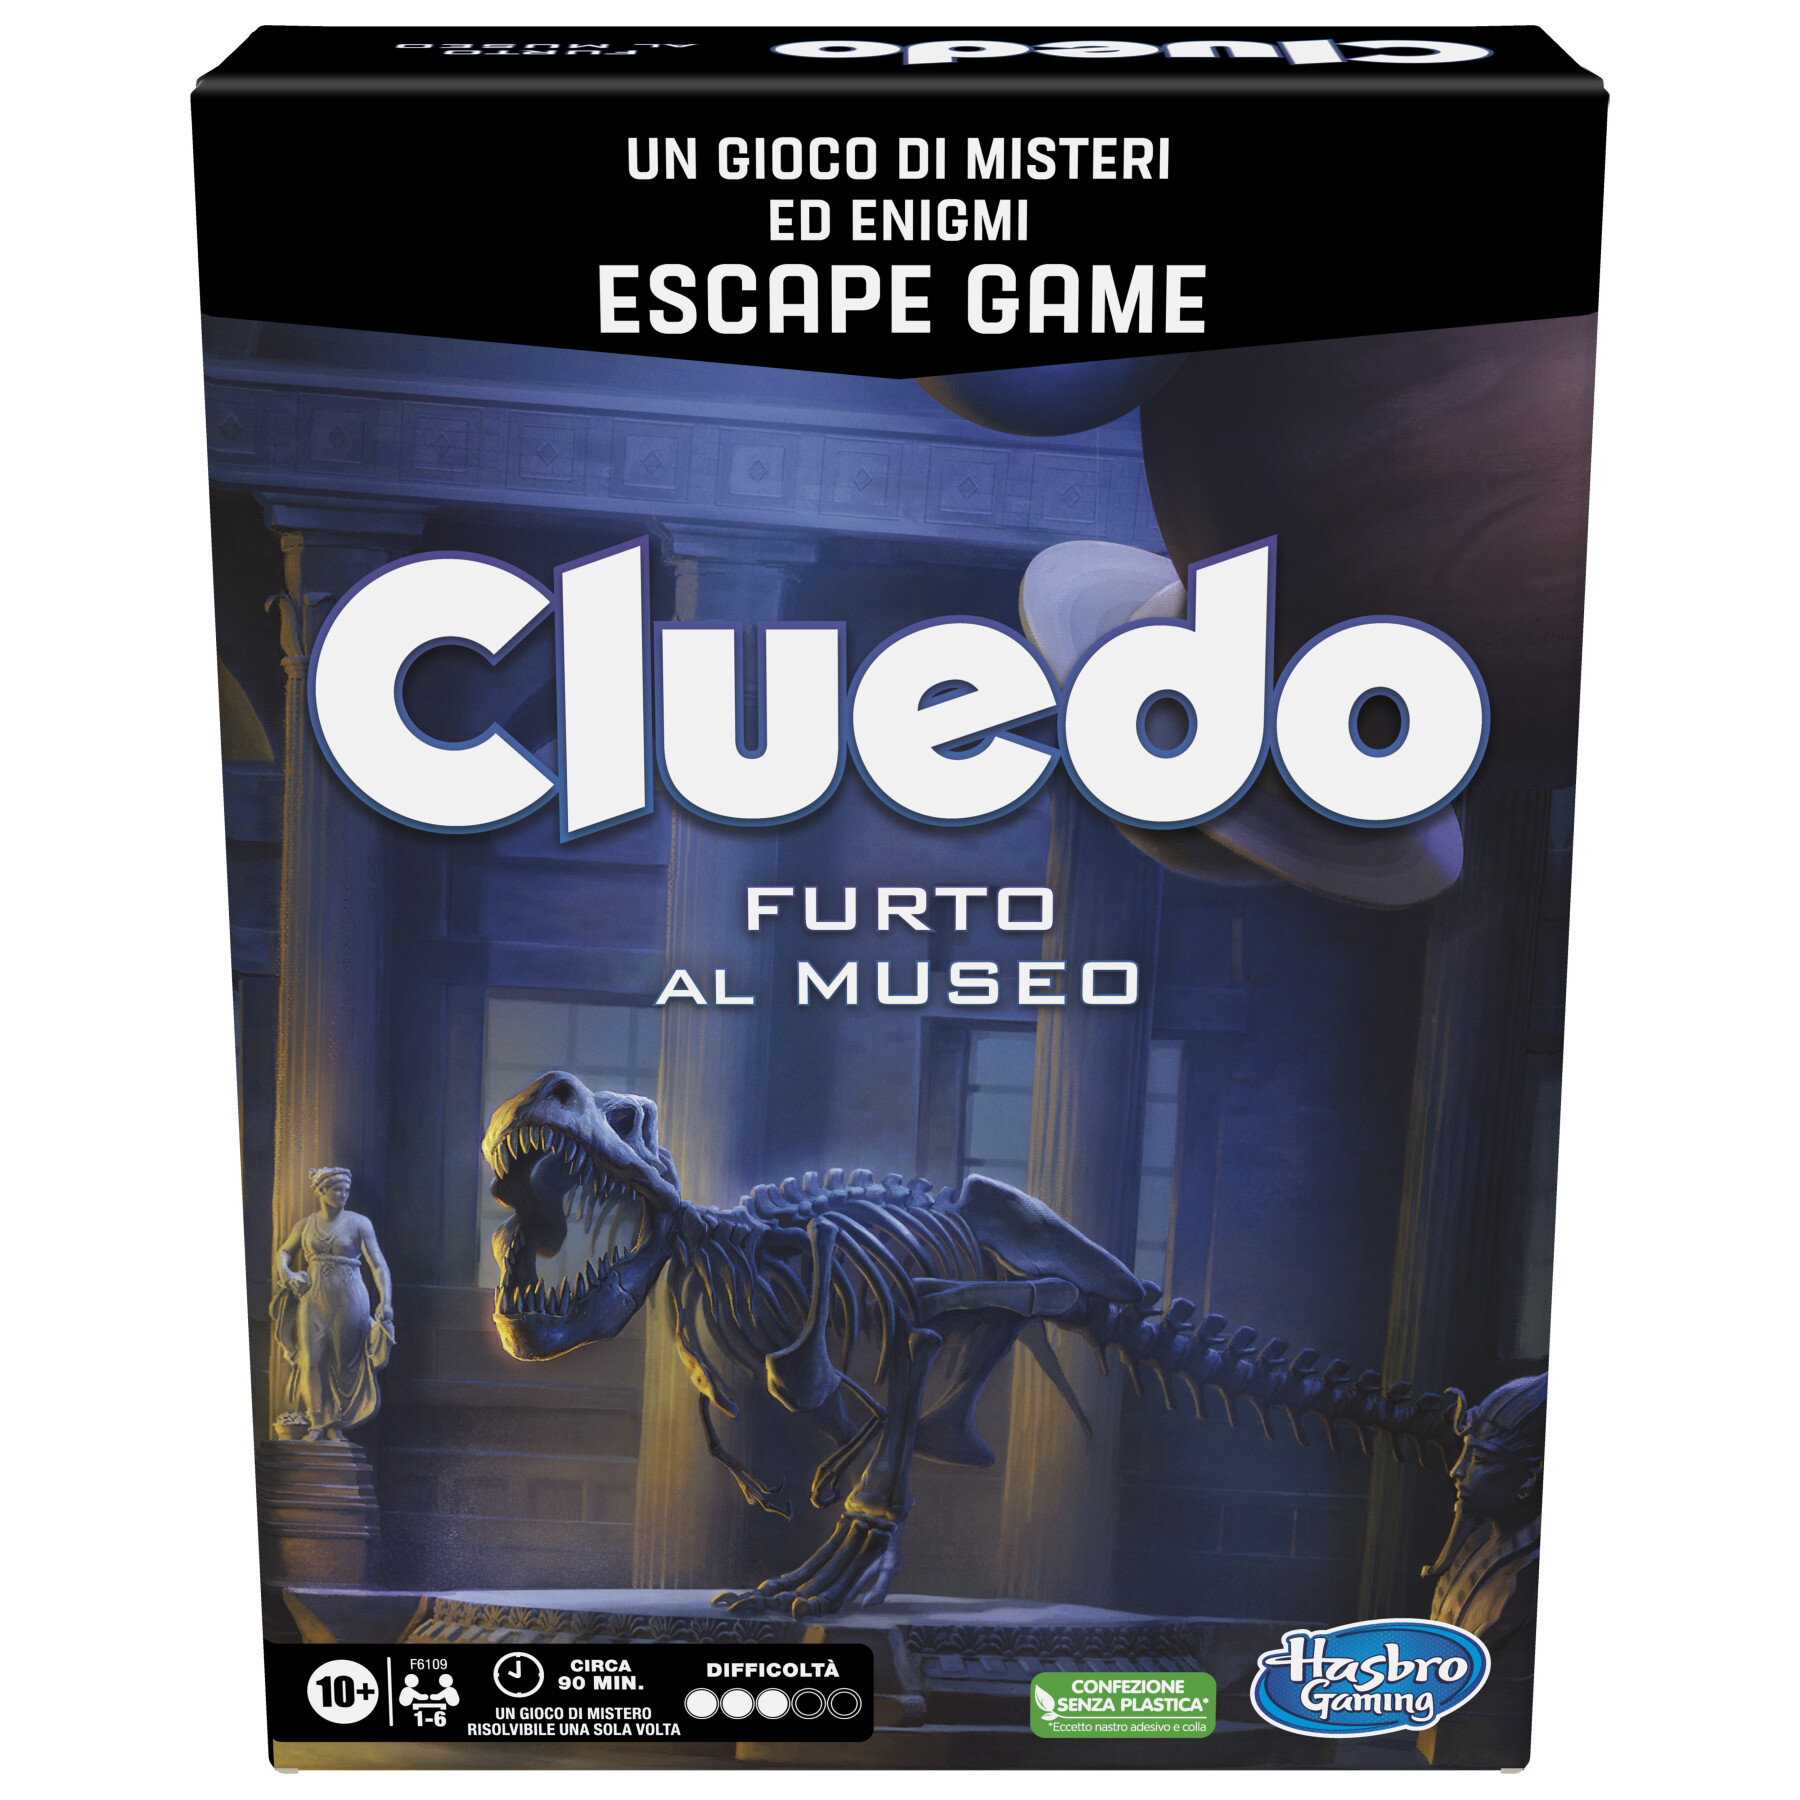 Cluedo escape - furto al museo, un gioco di misteri ed enigmi in versione escape game, un gioco da tavolo cooperativo per famiglie, dai 10 anni in su, da 1 a 6 giocatori - HASBRO GAMING